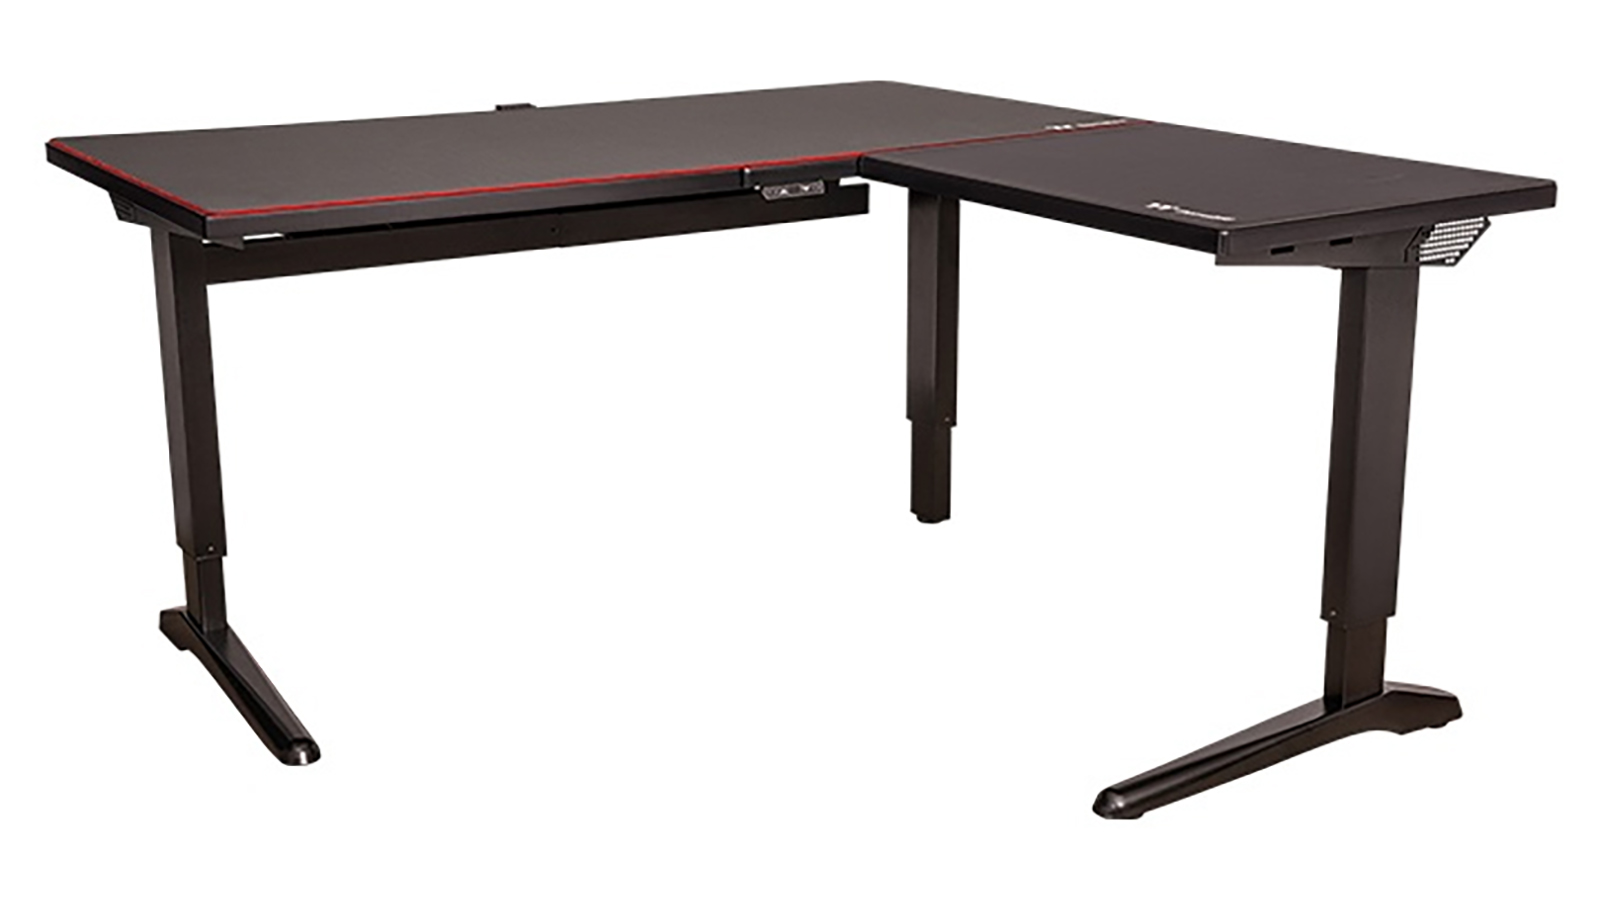 Thermaltake ToughDesk 500L RGB Battlestation Gaming Desk best gaming desk